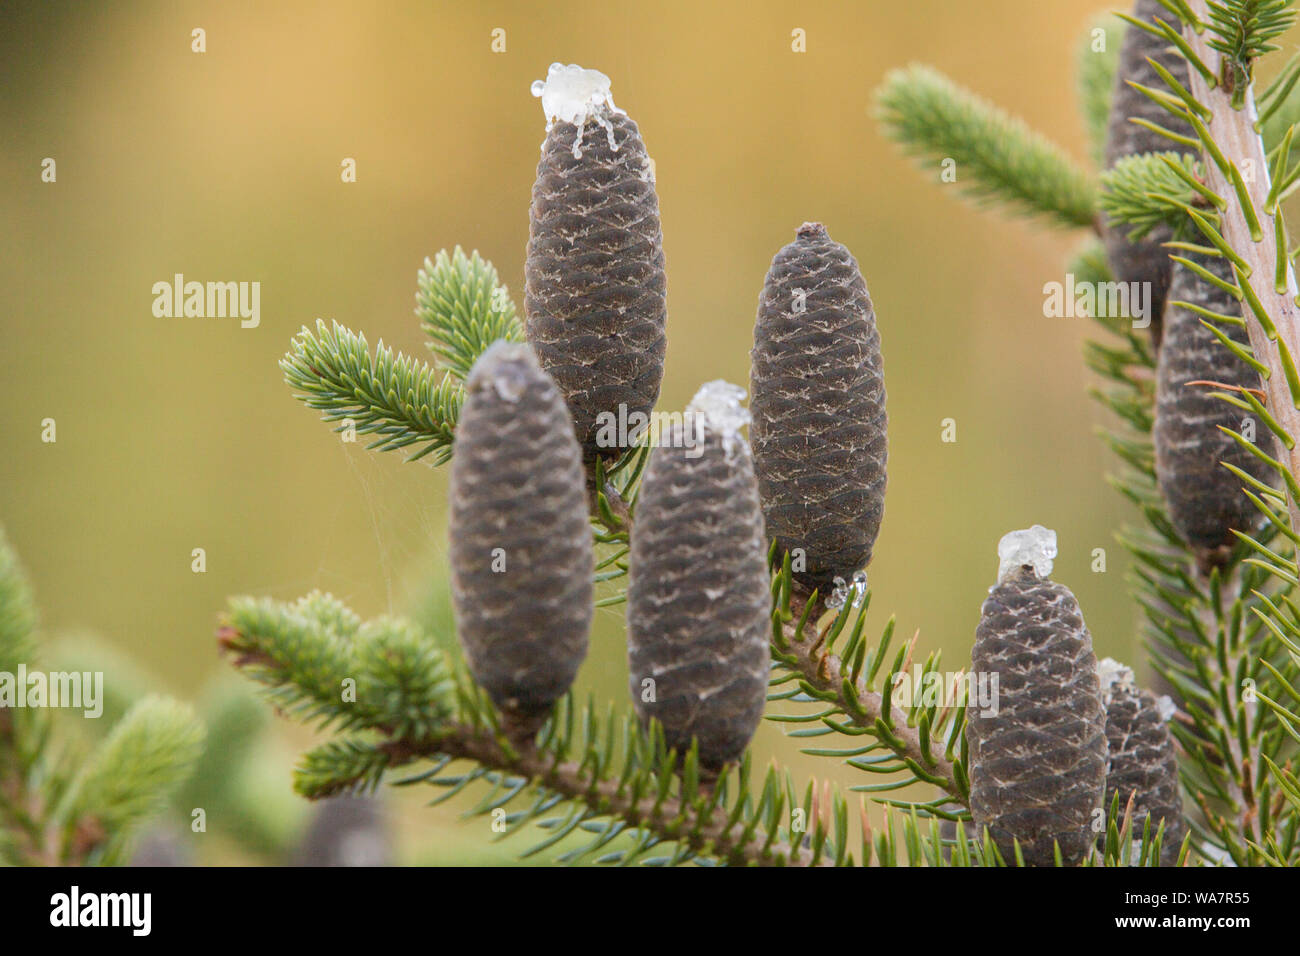 Abies balsamea or balsam fir detail Stock Photo